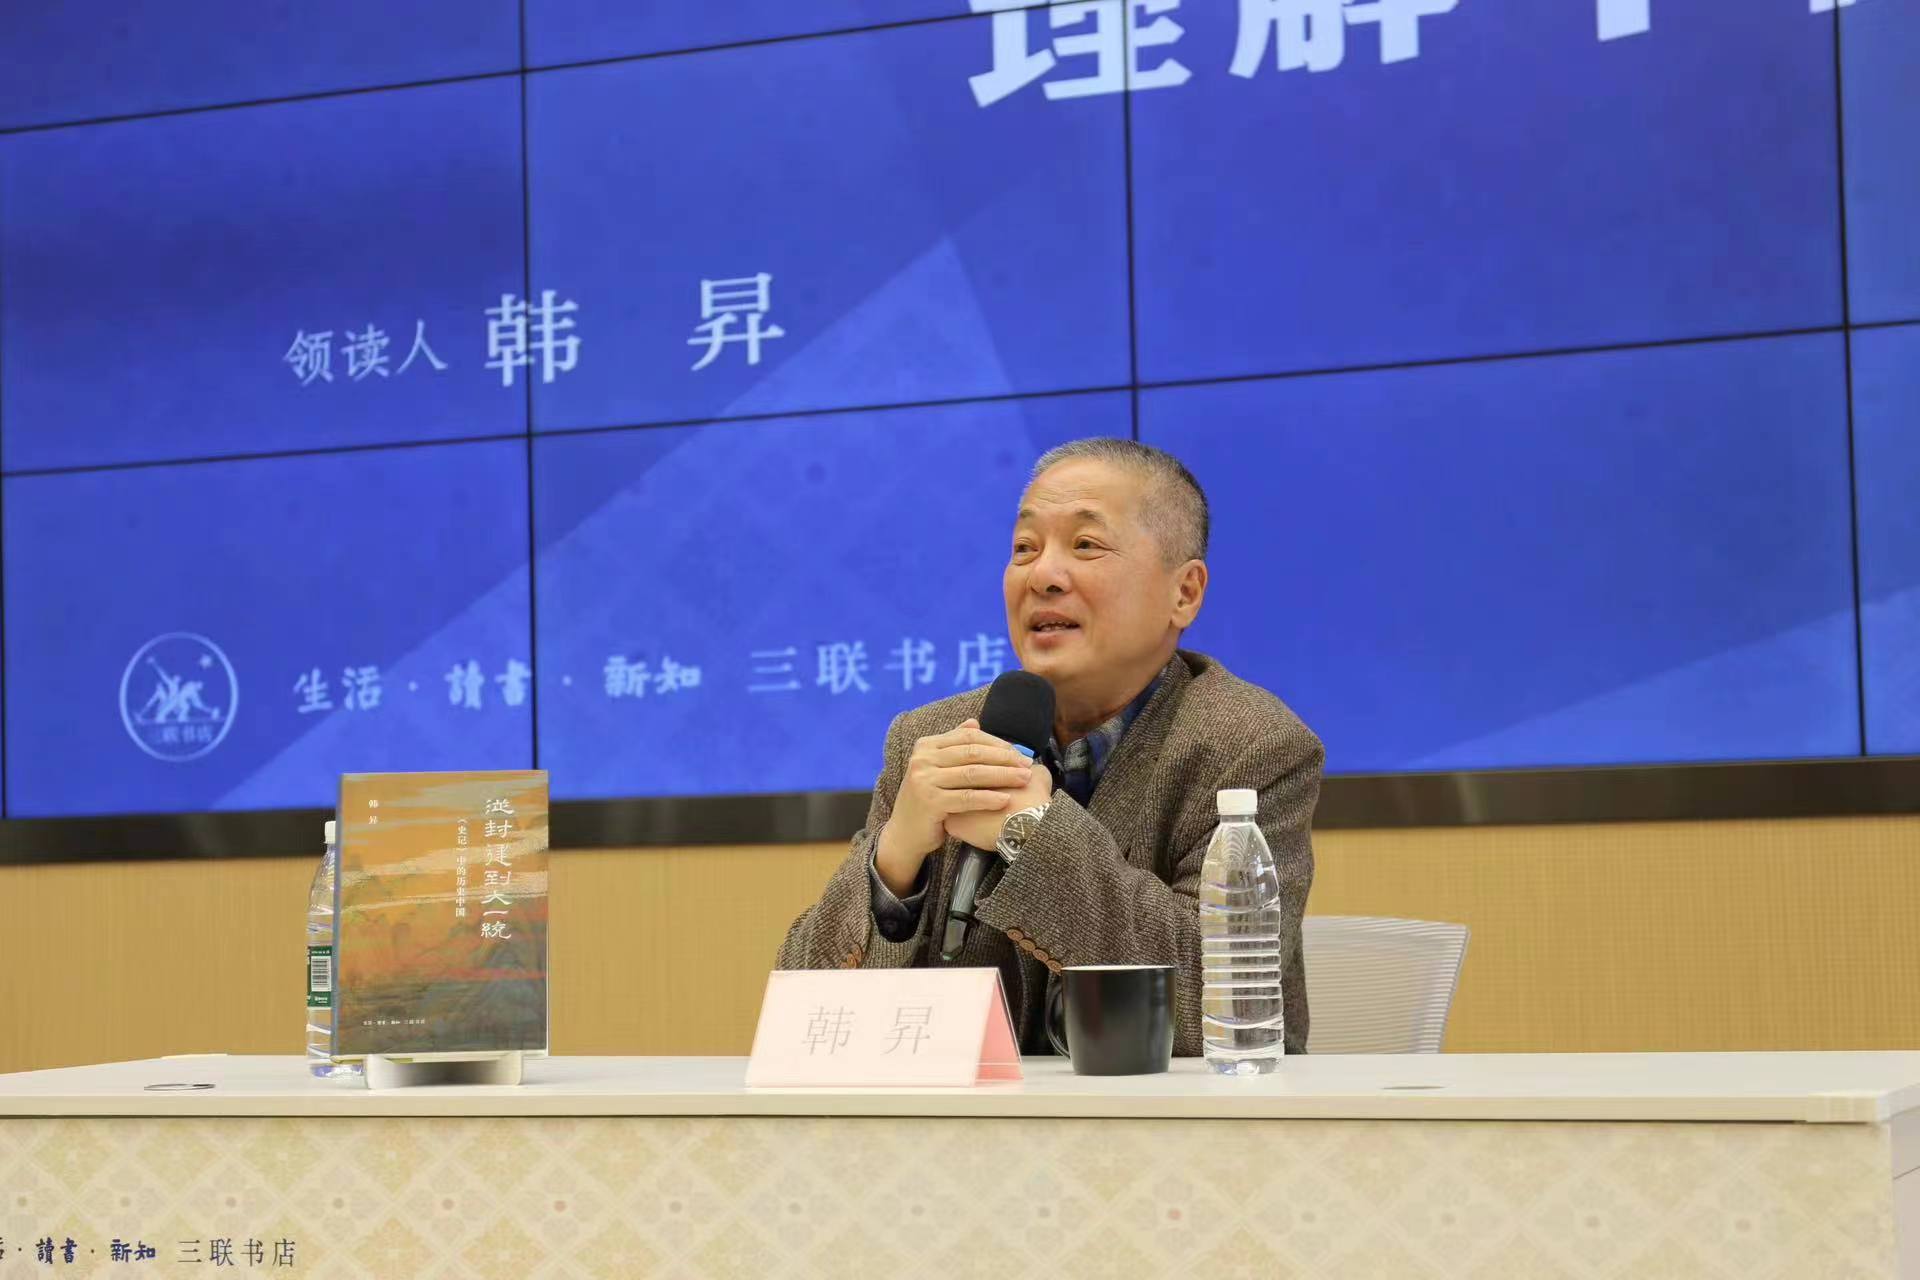 韩昇教授讲课  本文图片由三联书店提供